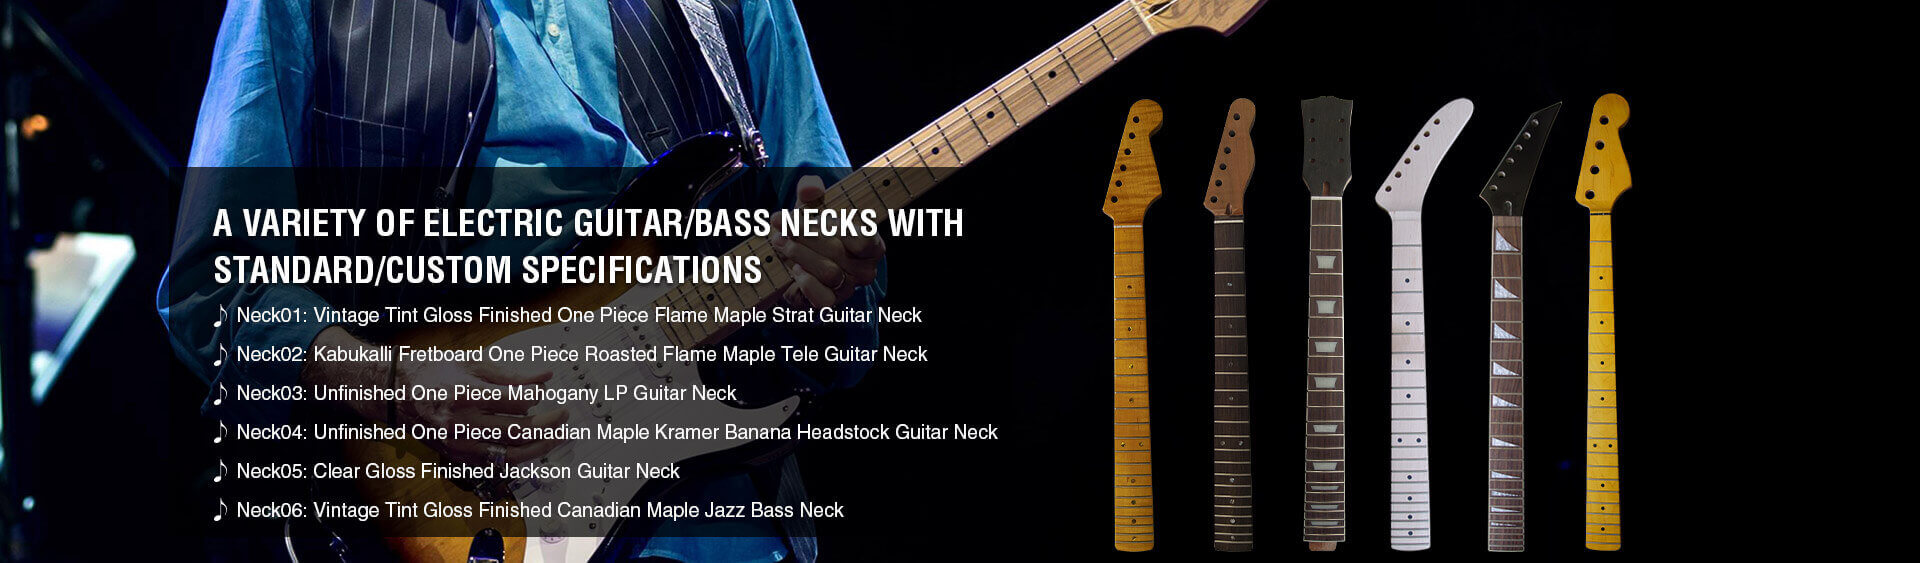 Electric Guitar Necks, Electric Bass Necks